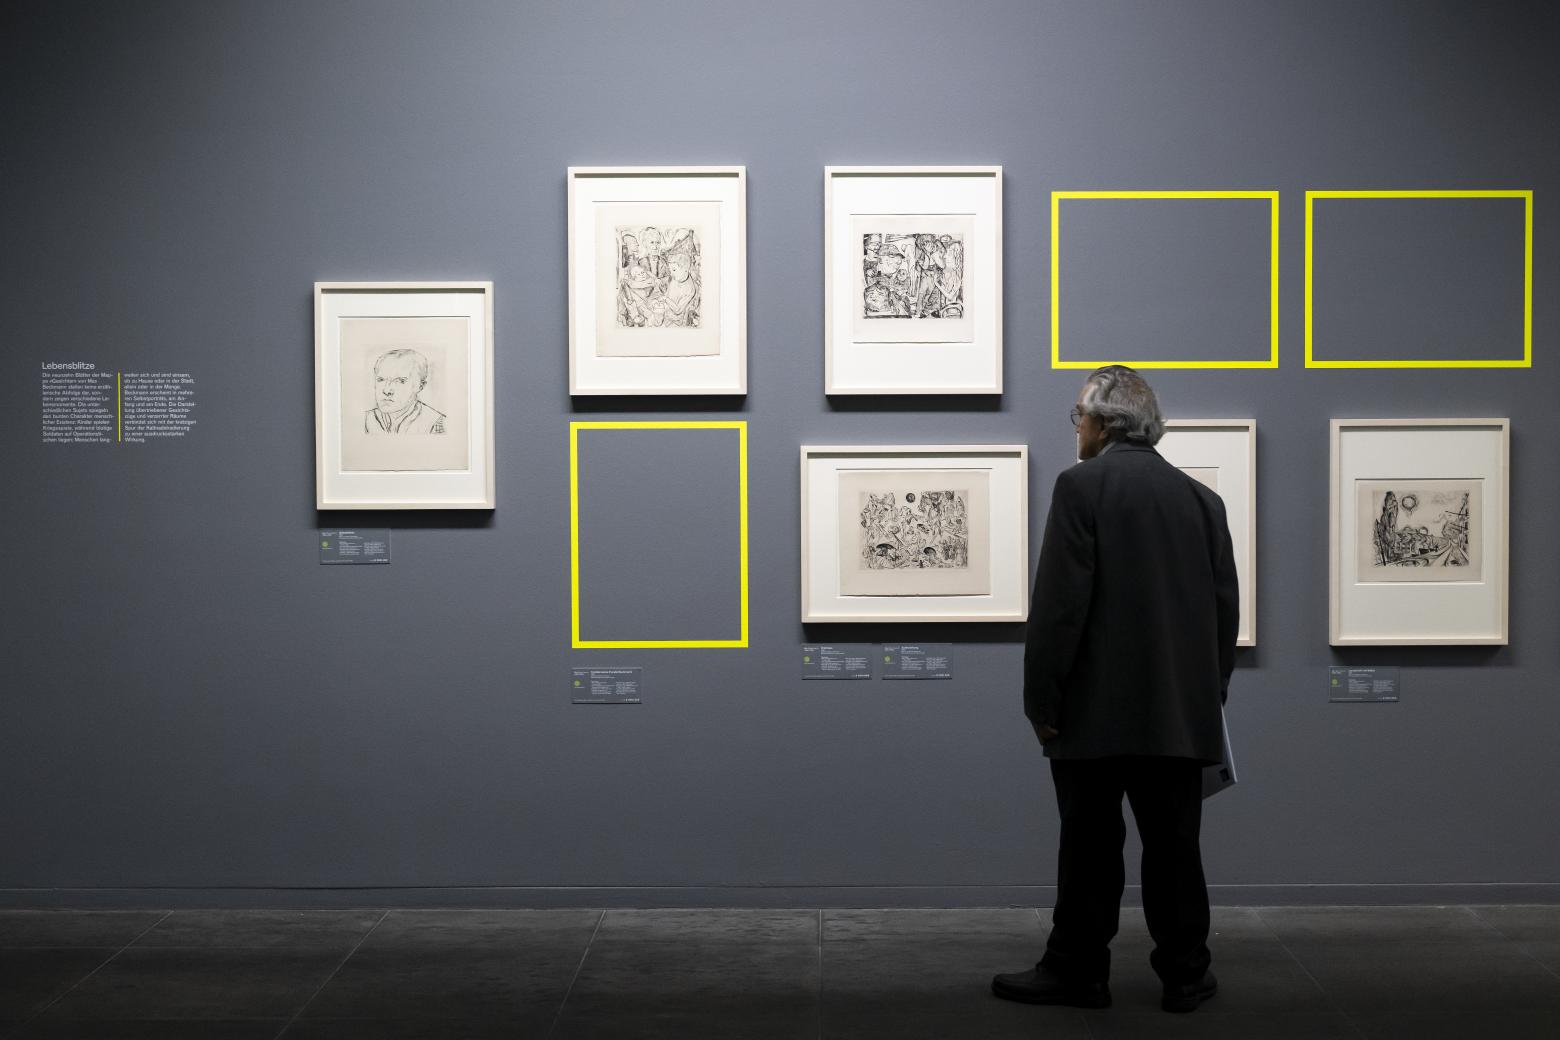 Max Beckmann "Gesichter" in der Ausstellung "Gurlitt - eine Bilanz" im Kunstmuseum Bern, 2022